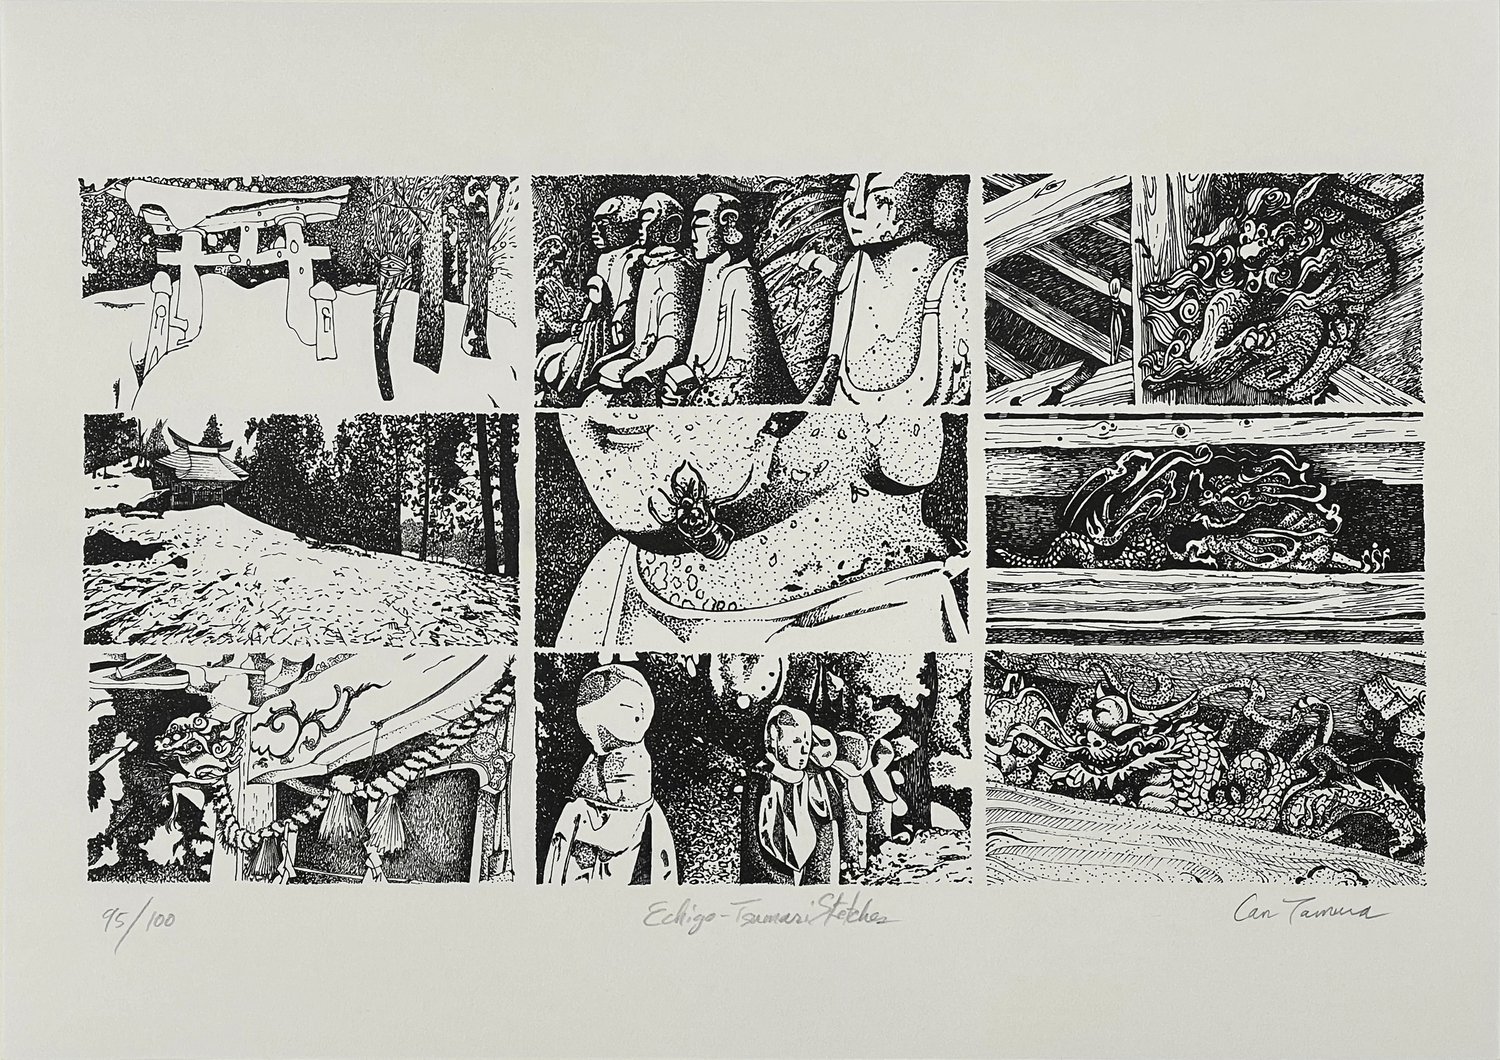 "Echigo-Tsumari Sketches" Risograph Print